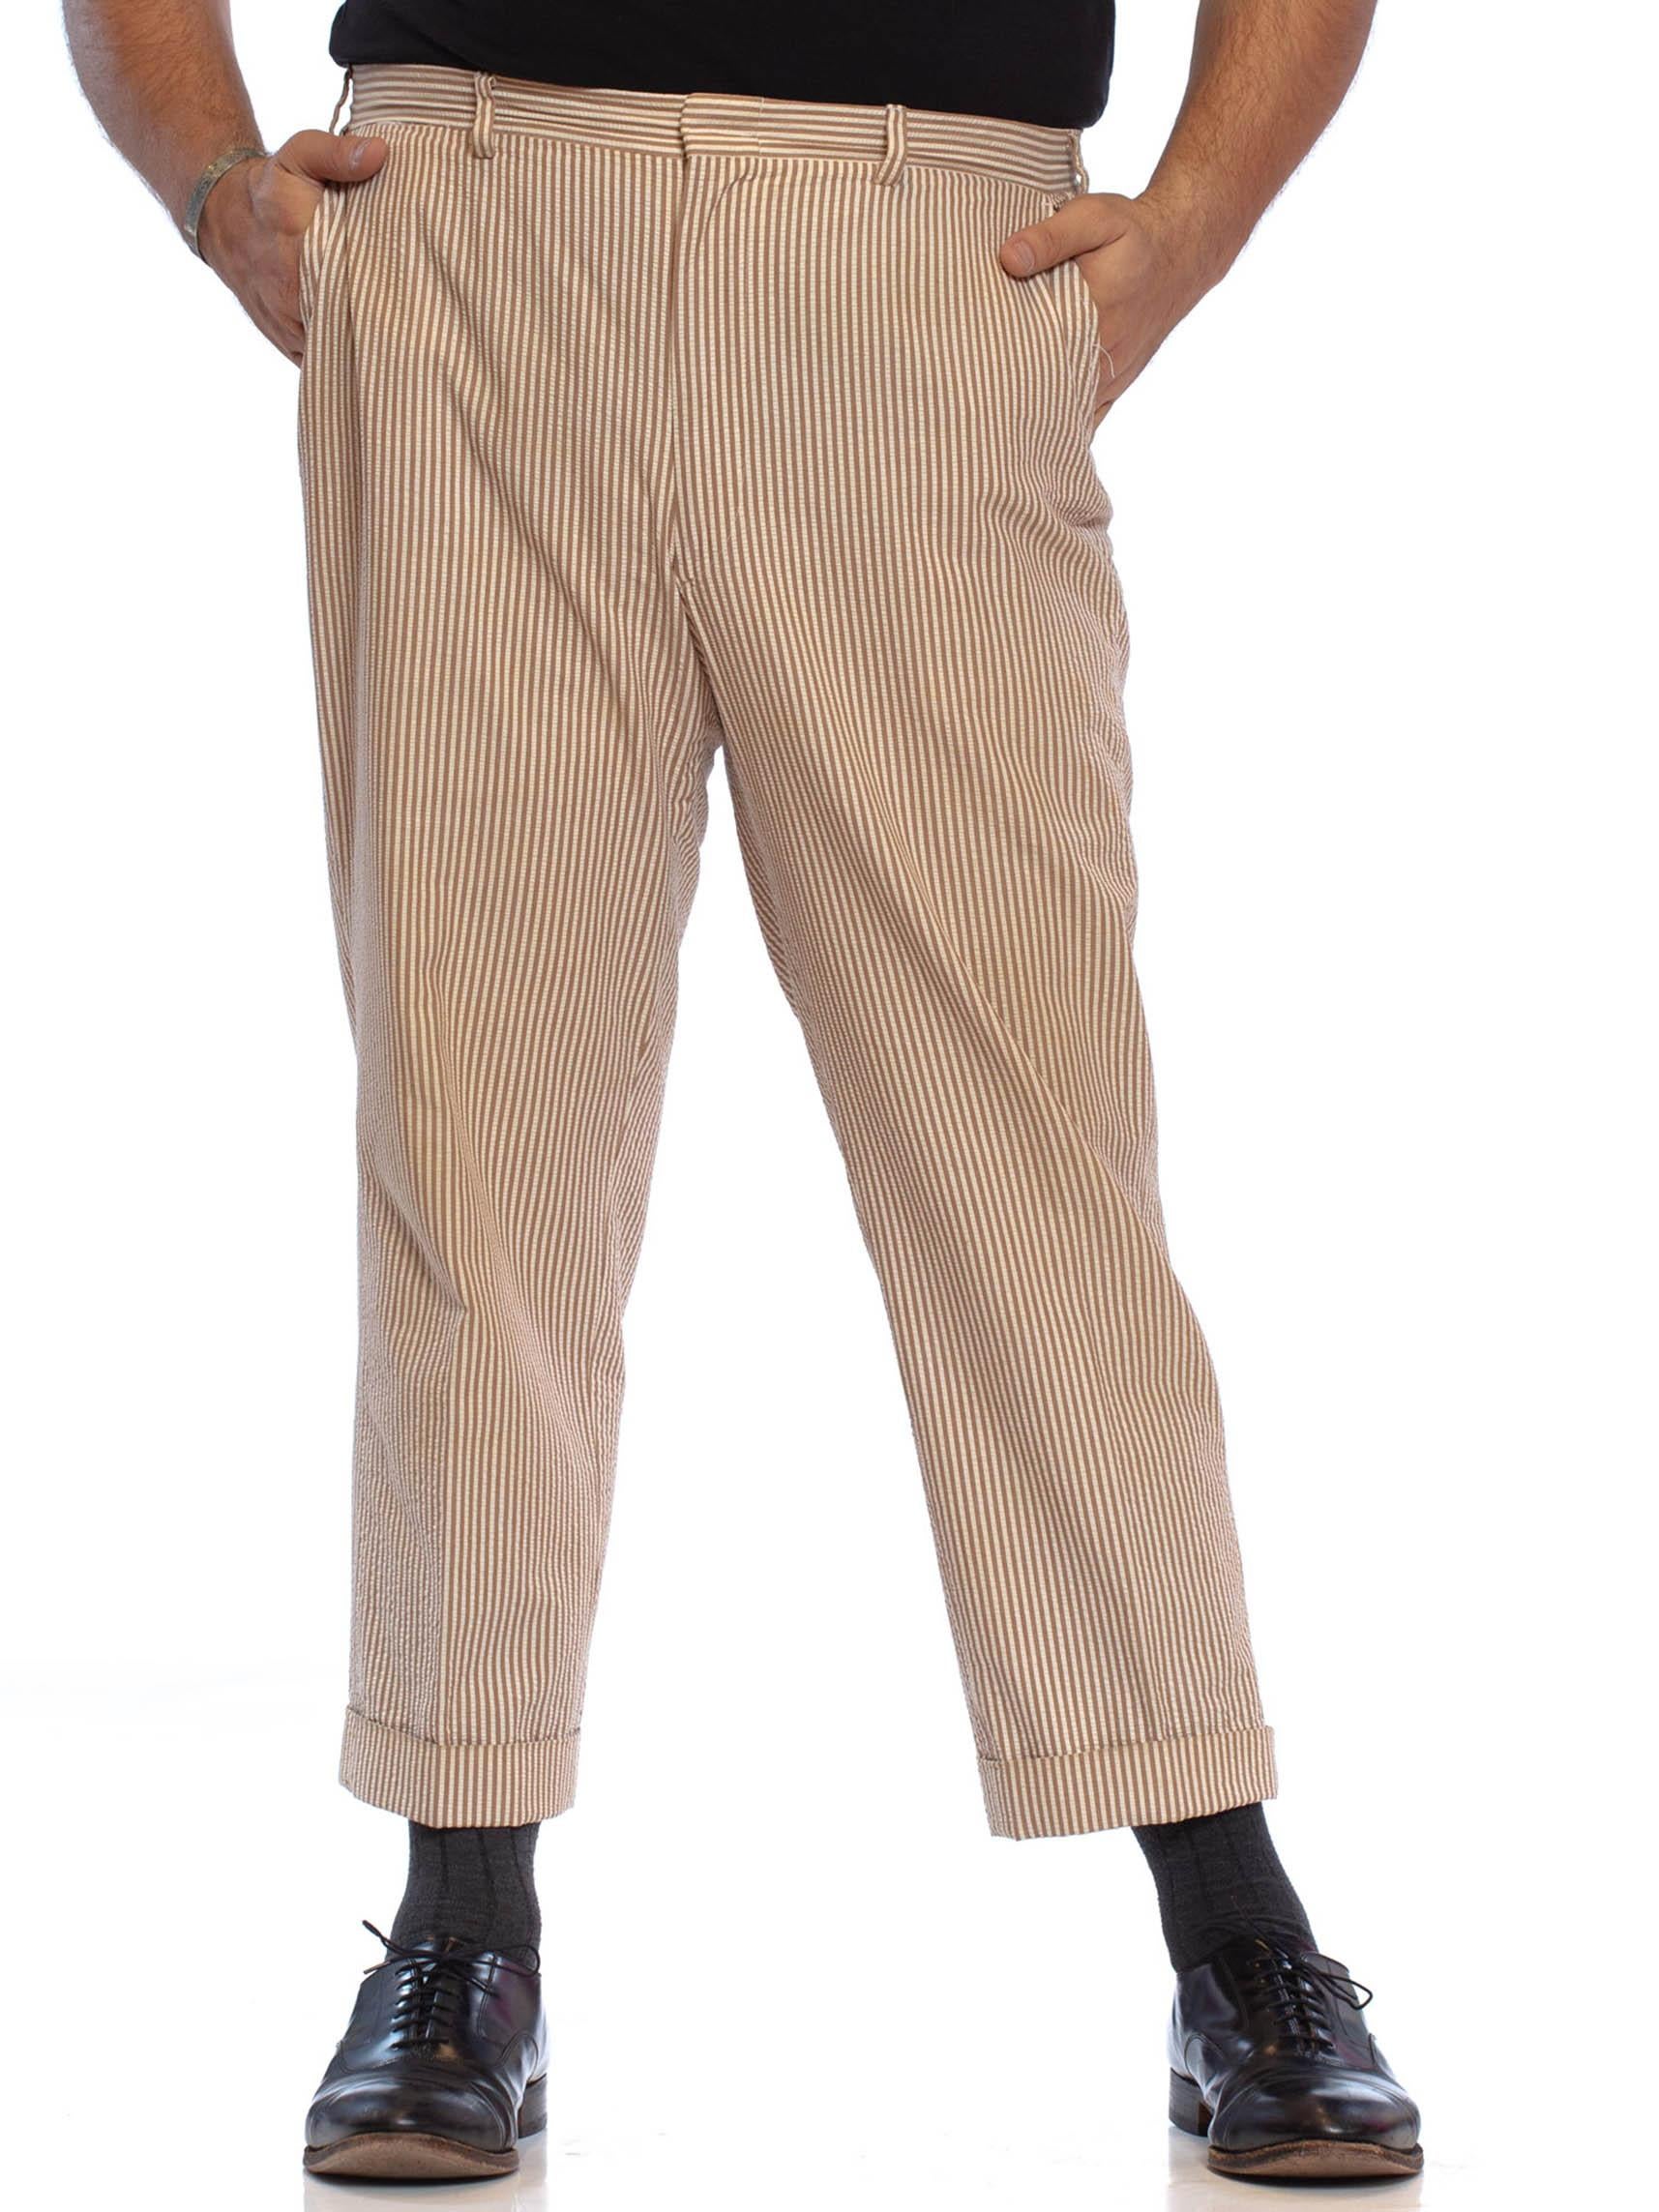 pantalon pour homme BROOKS BROTHERS des années 1970 en coton séché marron et beige